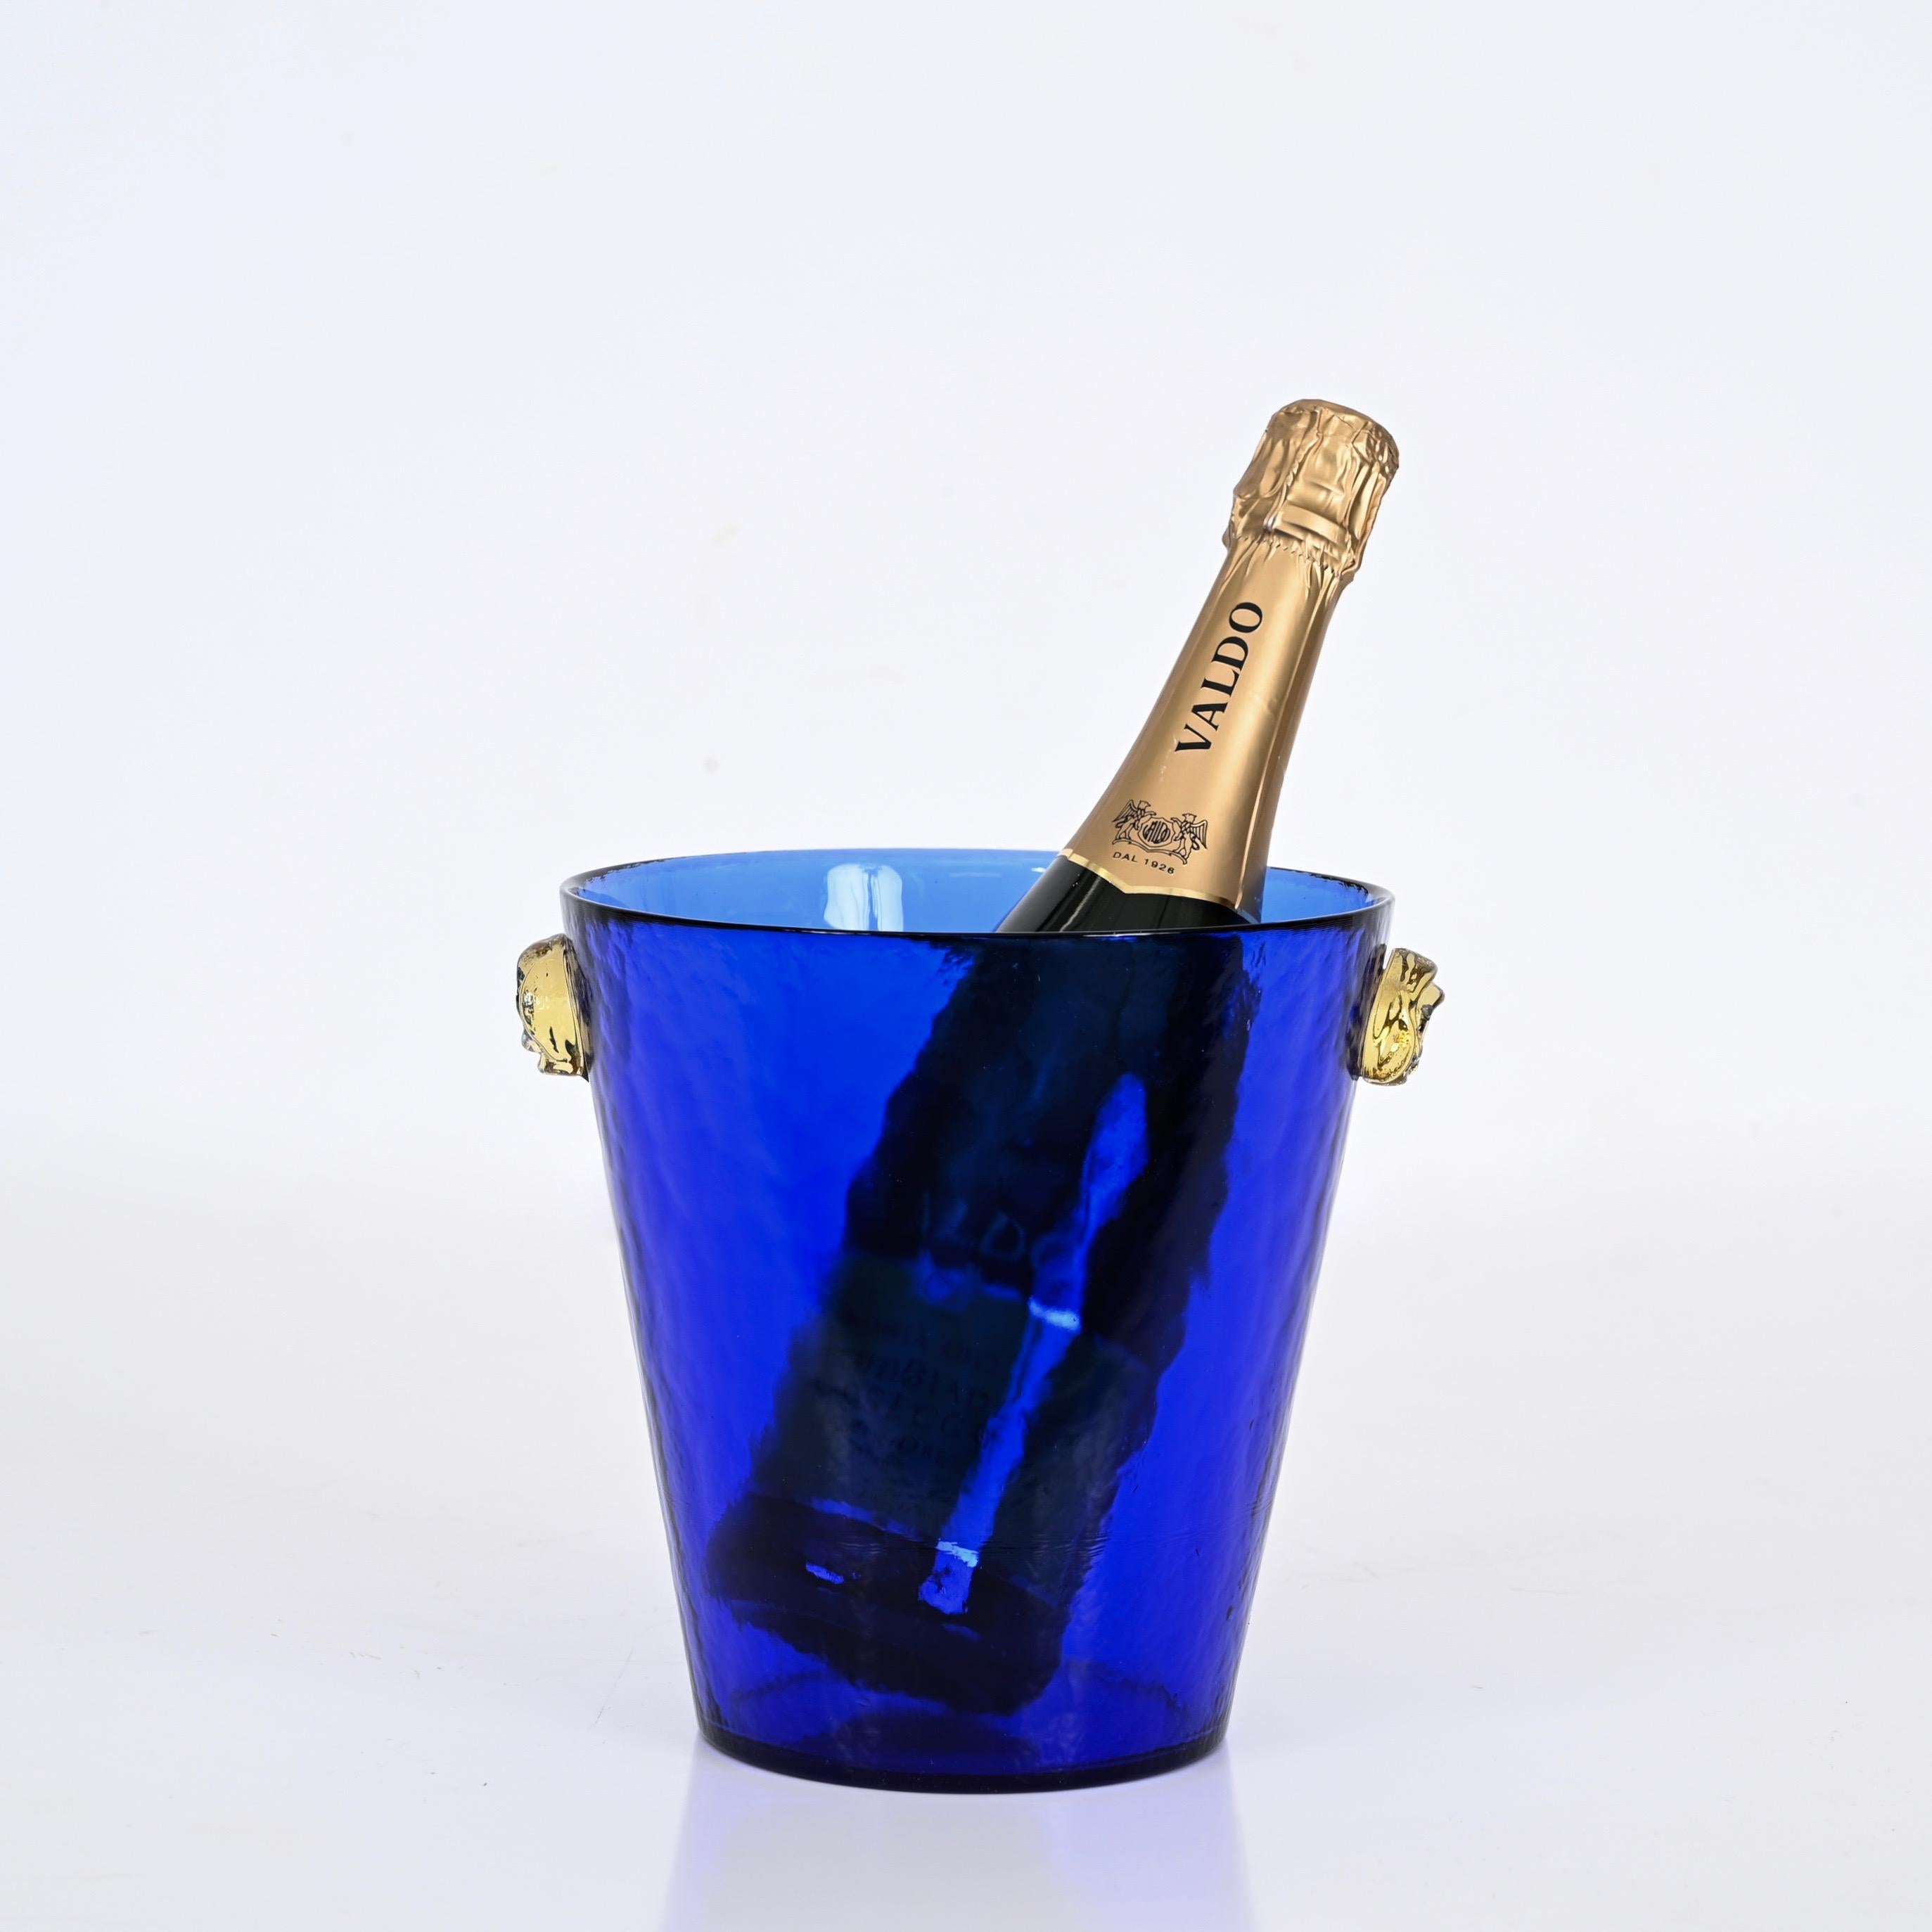 Wunderschöner Eiskübel aus blauem Murano-Glas mit goldenen Glasgriffen. Dieses wunderschöne Stück wurde in den 1960er Jahren in Murano, Italien, hergestellt.

Dieser Eiskübel ist aus einem unglaublich leuchtenden blauen Glas gefertigt und wird durch